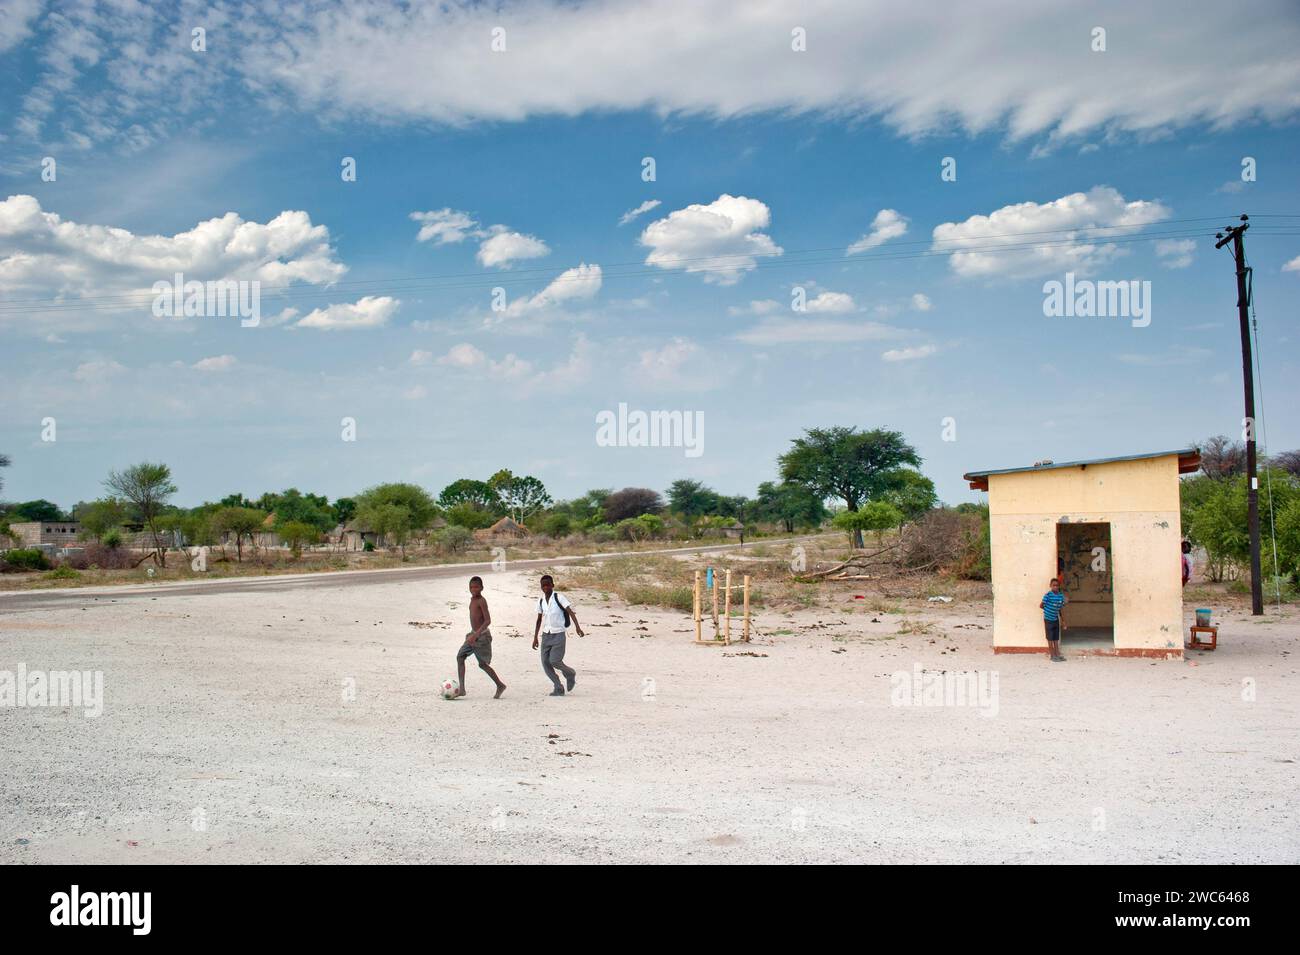 Kleine Dorfsiedlung mit Fußball spielenden Kindern, Dorf, Kinder, Dorf, Straße, Street Football, Freizeit, in der Nähe von Guamare in Botswana Stockfoto